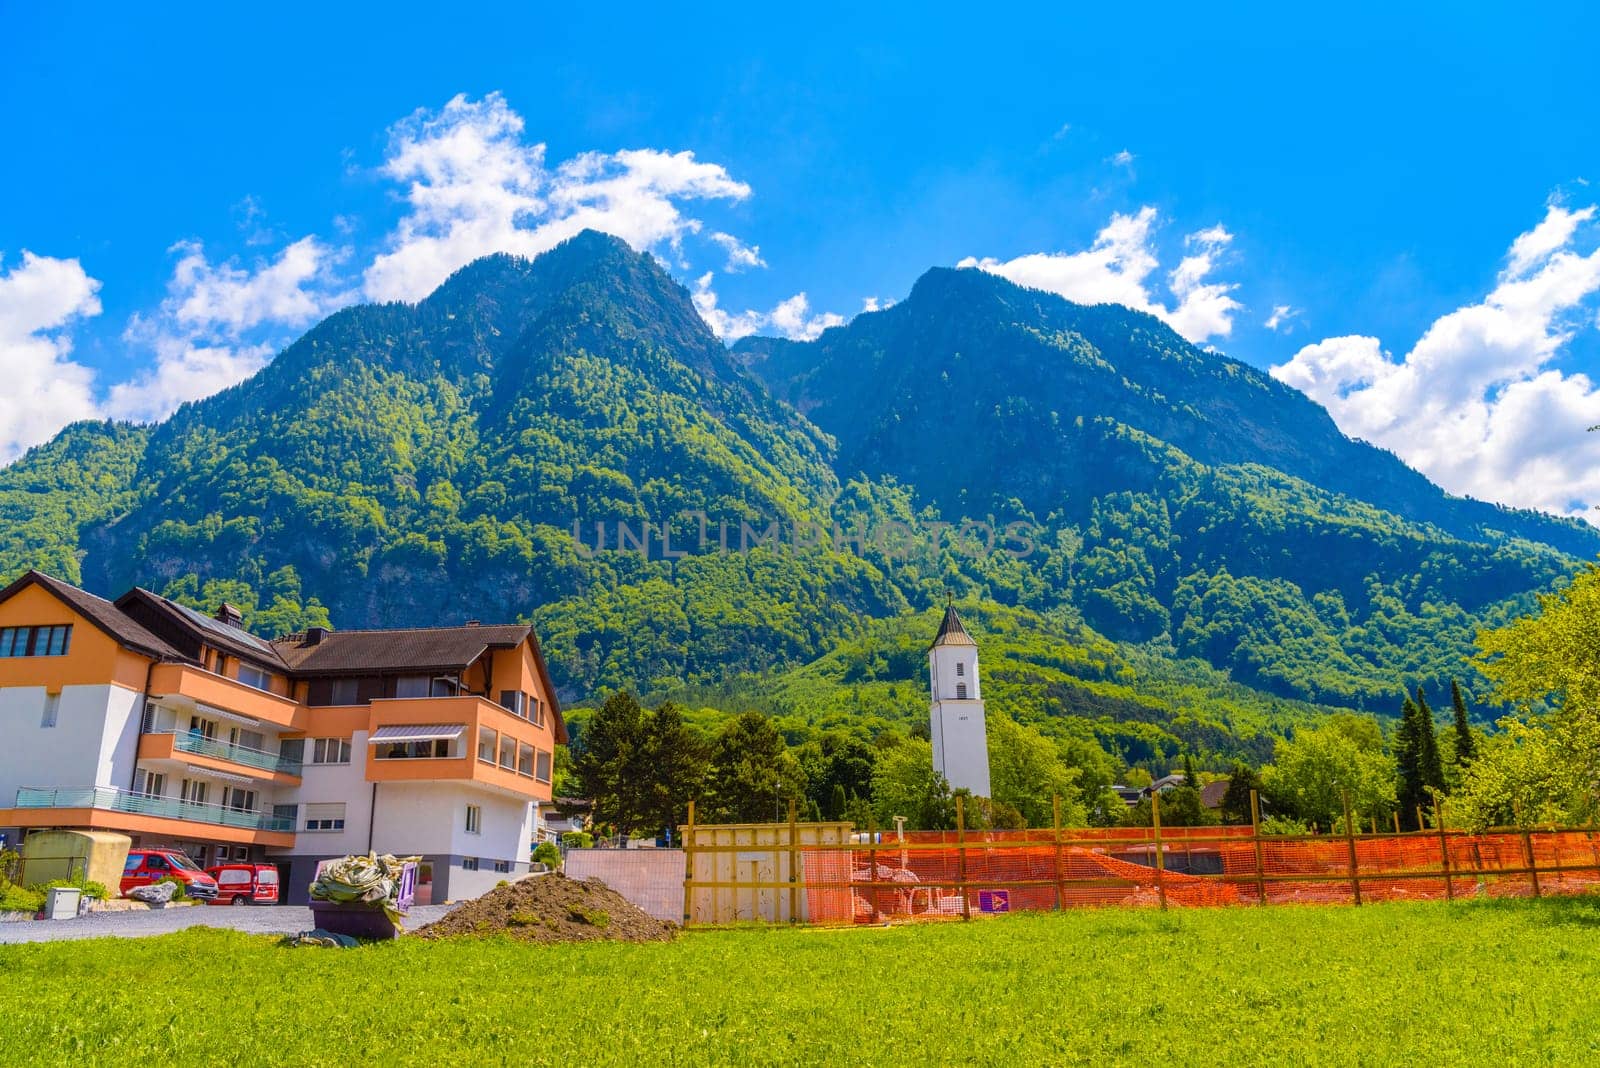 Houses near the mountains in Vaduz, Oberland Liechtenstein.